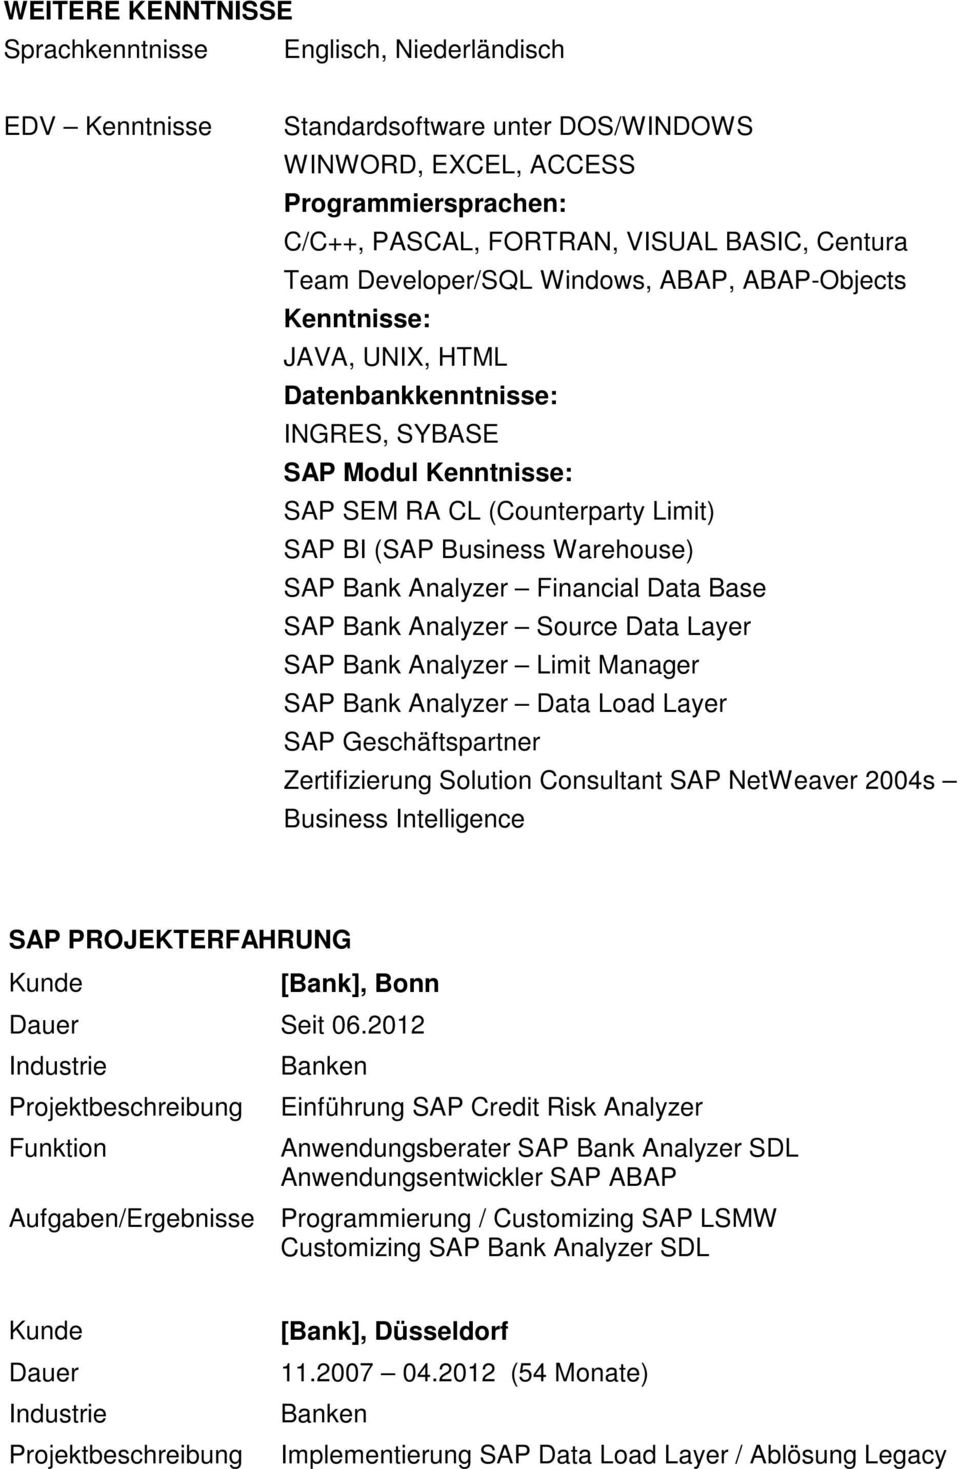 Warehouse) SAP Bank Analyzer Financial Data Base SAP Bank Analyzer Source Data Layer SAP Bank Analyzer Limit Manager SAP Bank Analyzer Data Load Layer SAP Geschäftspartner Zertifizierung Solution